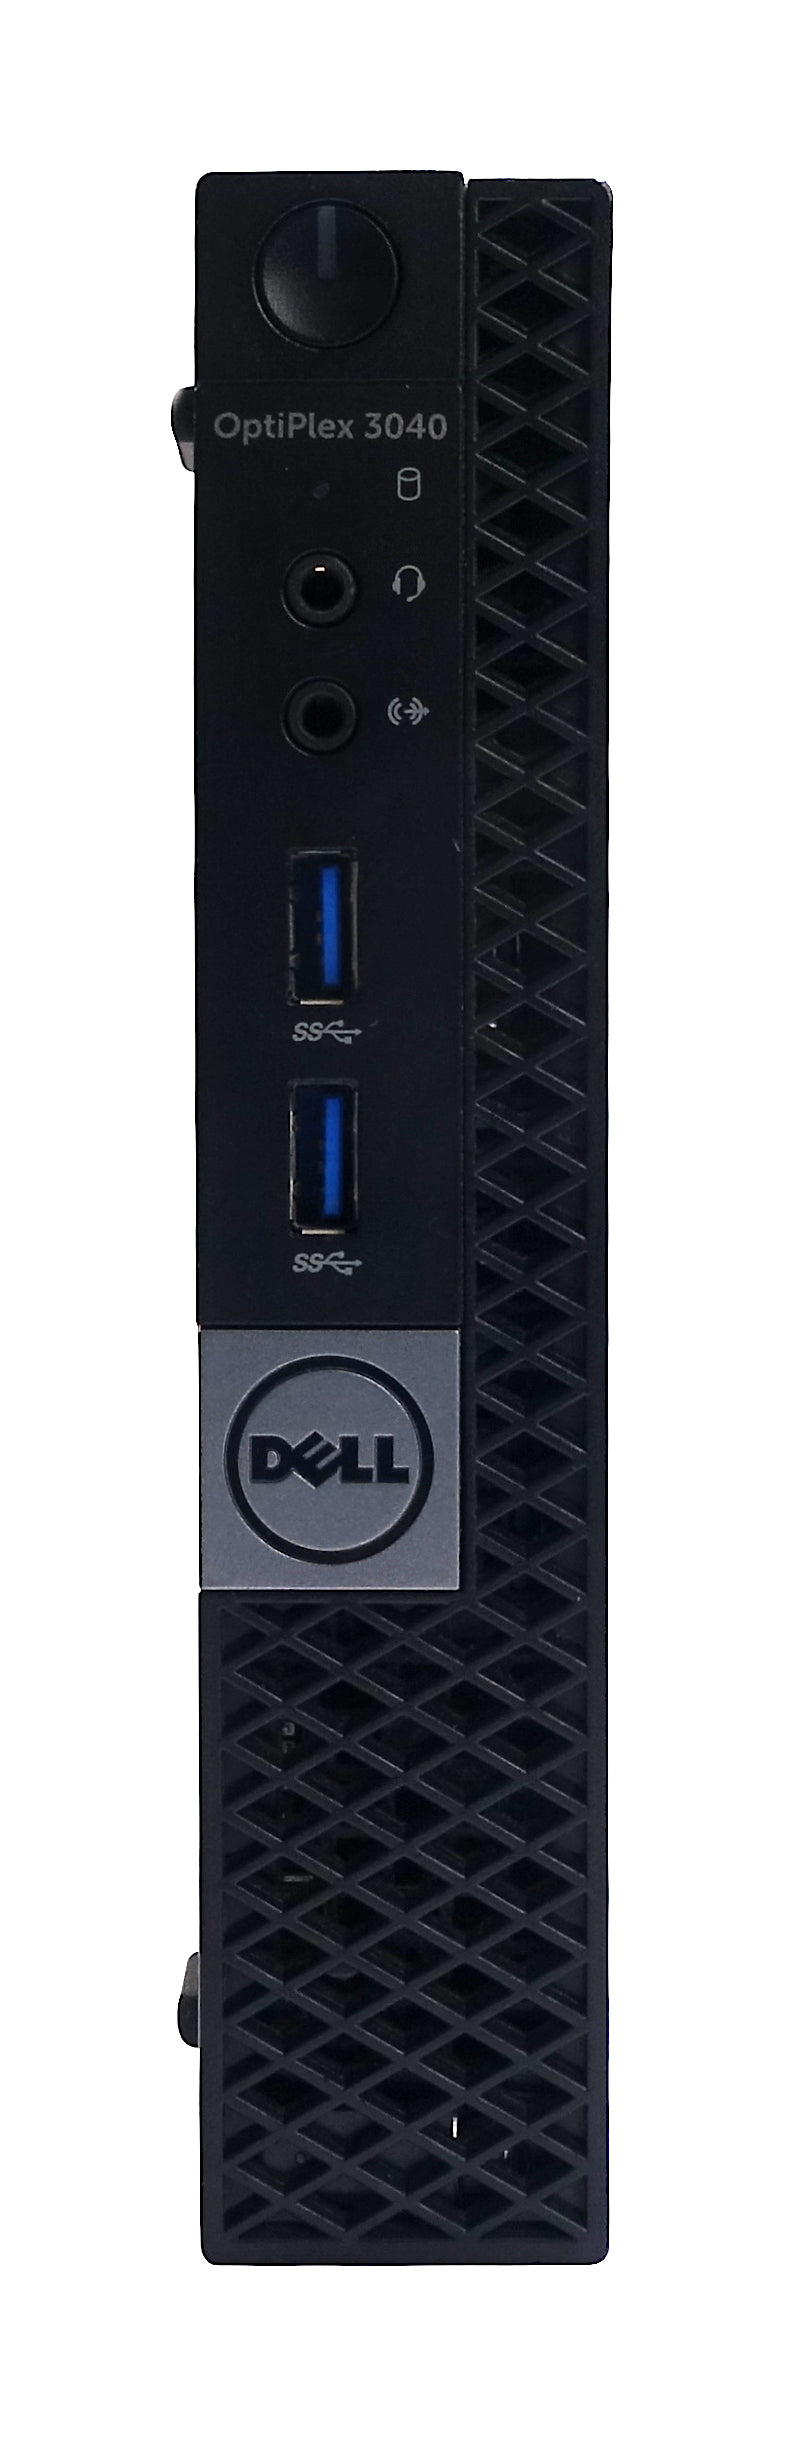 Dell Optiplex 3040 Micro PC, Core i5 6th Gen, 8GB RAM, 128GB SSD